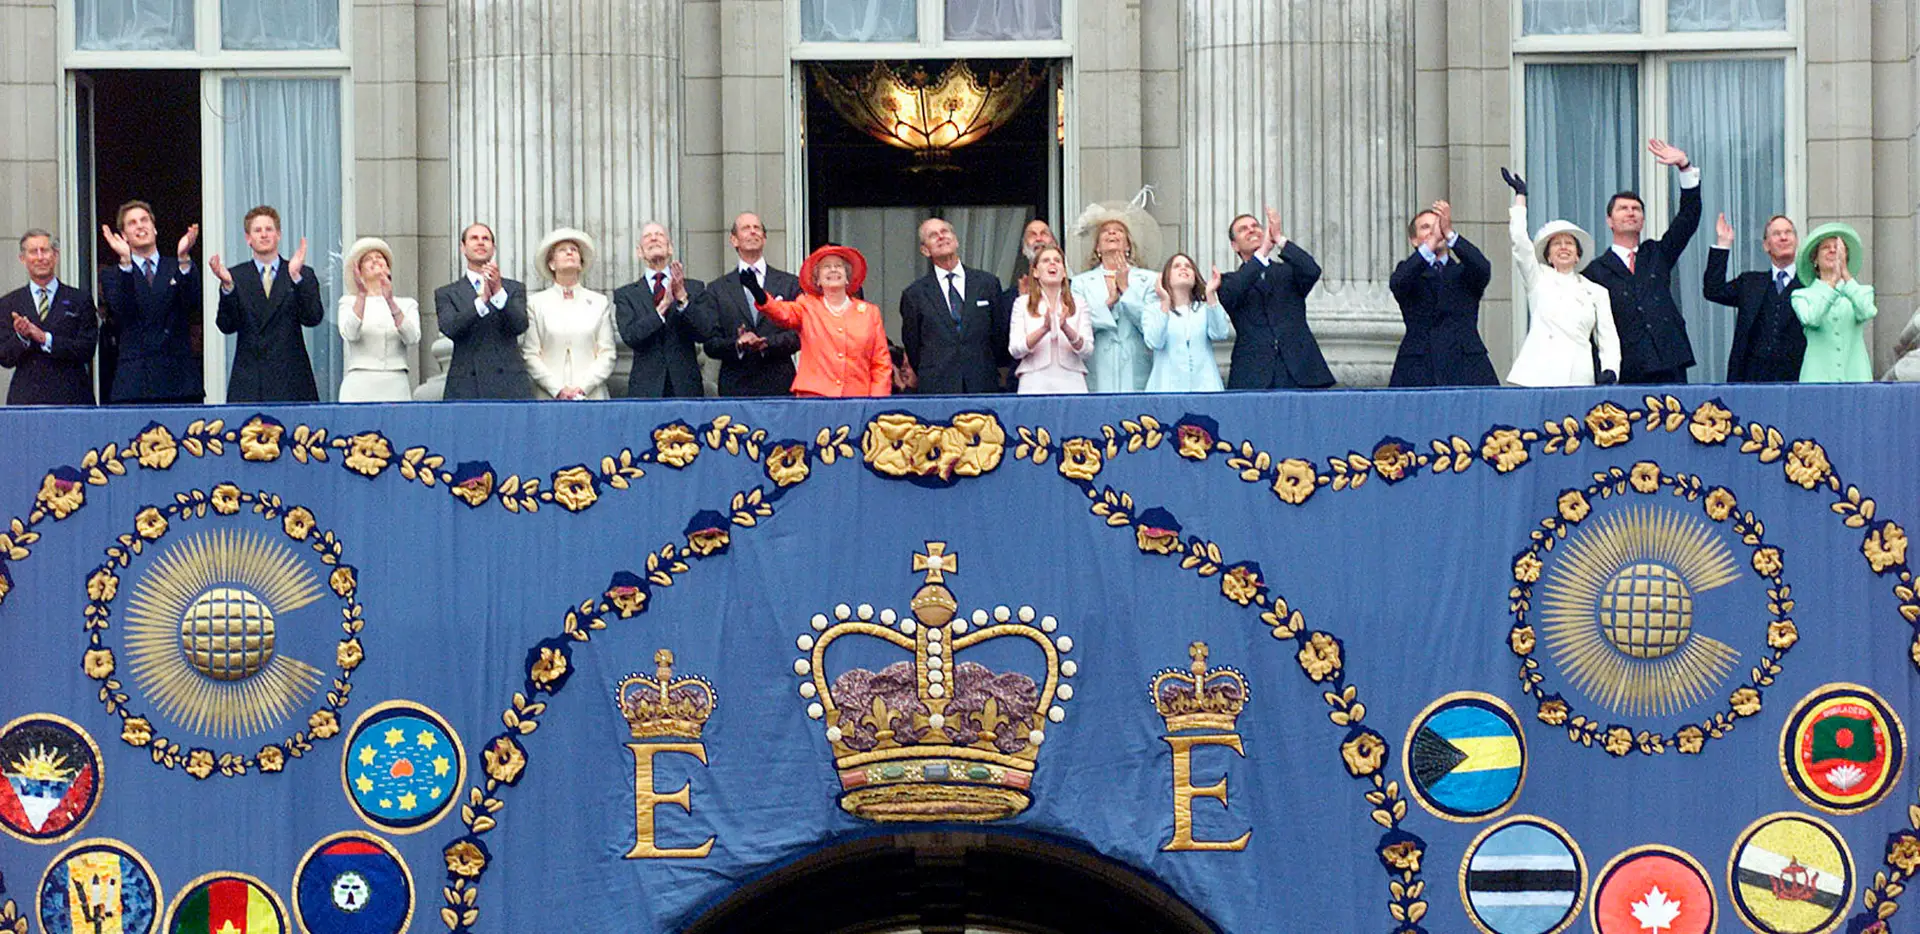 Isabel II e membros da família real britânica na comemoração do Jubileu de Ouro - 50 anos de reinado, em 2002.